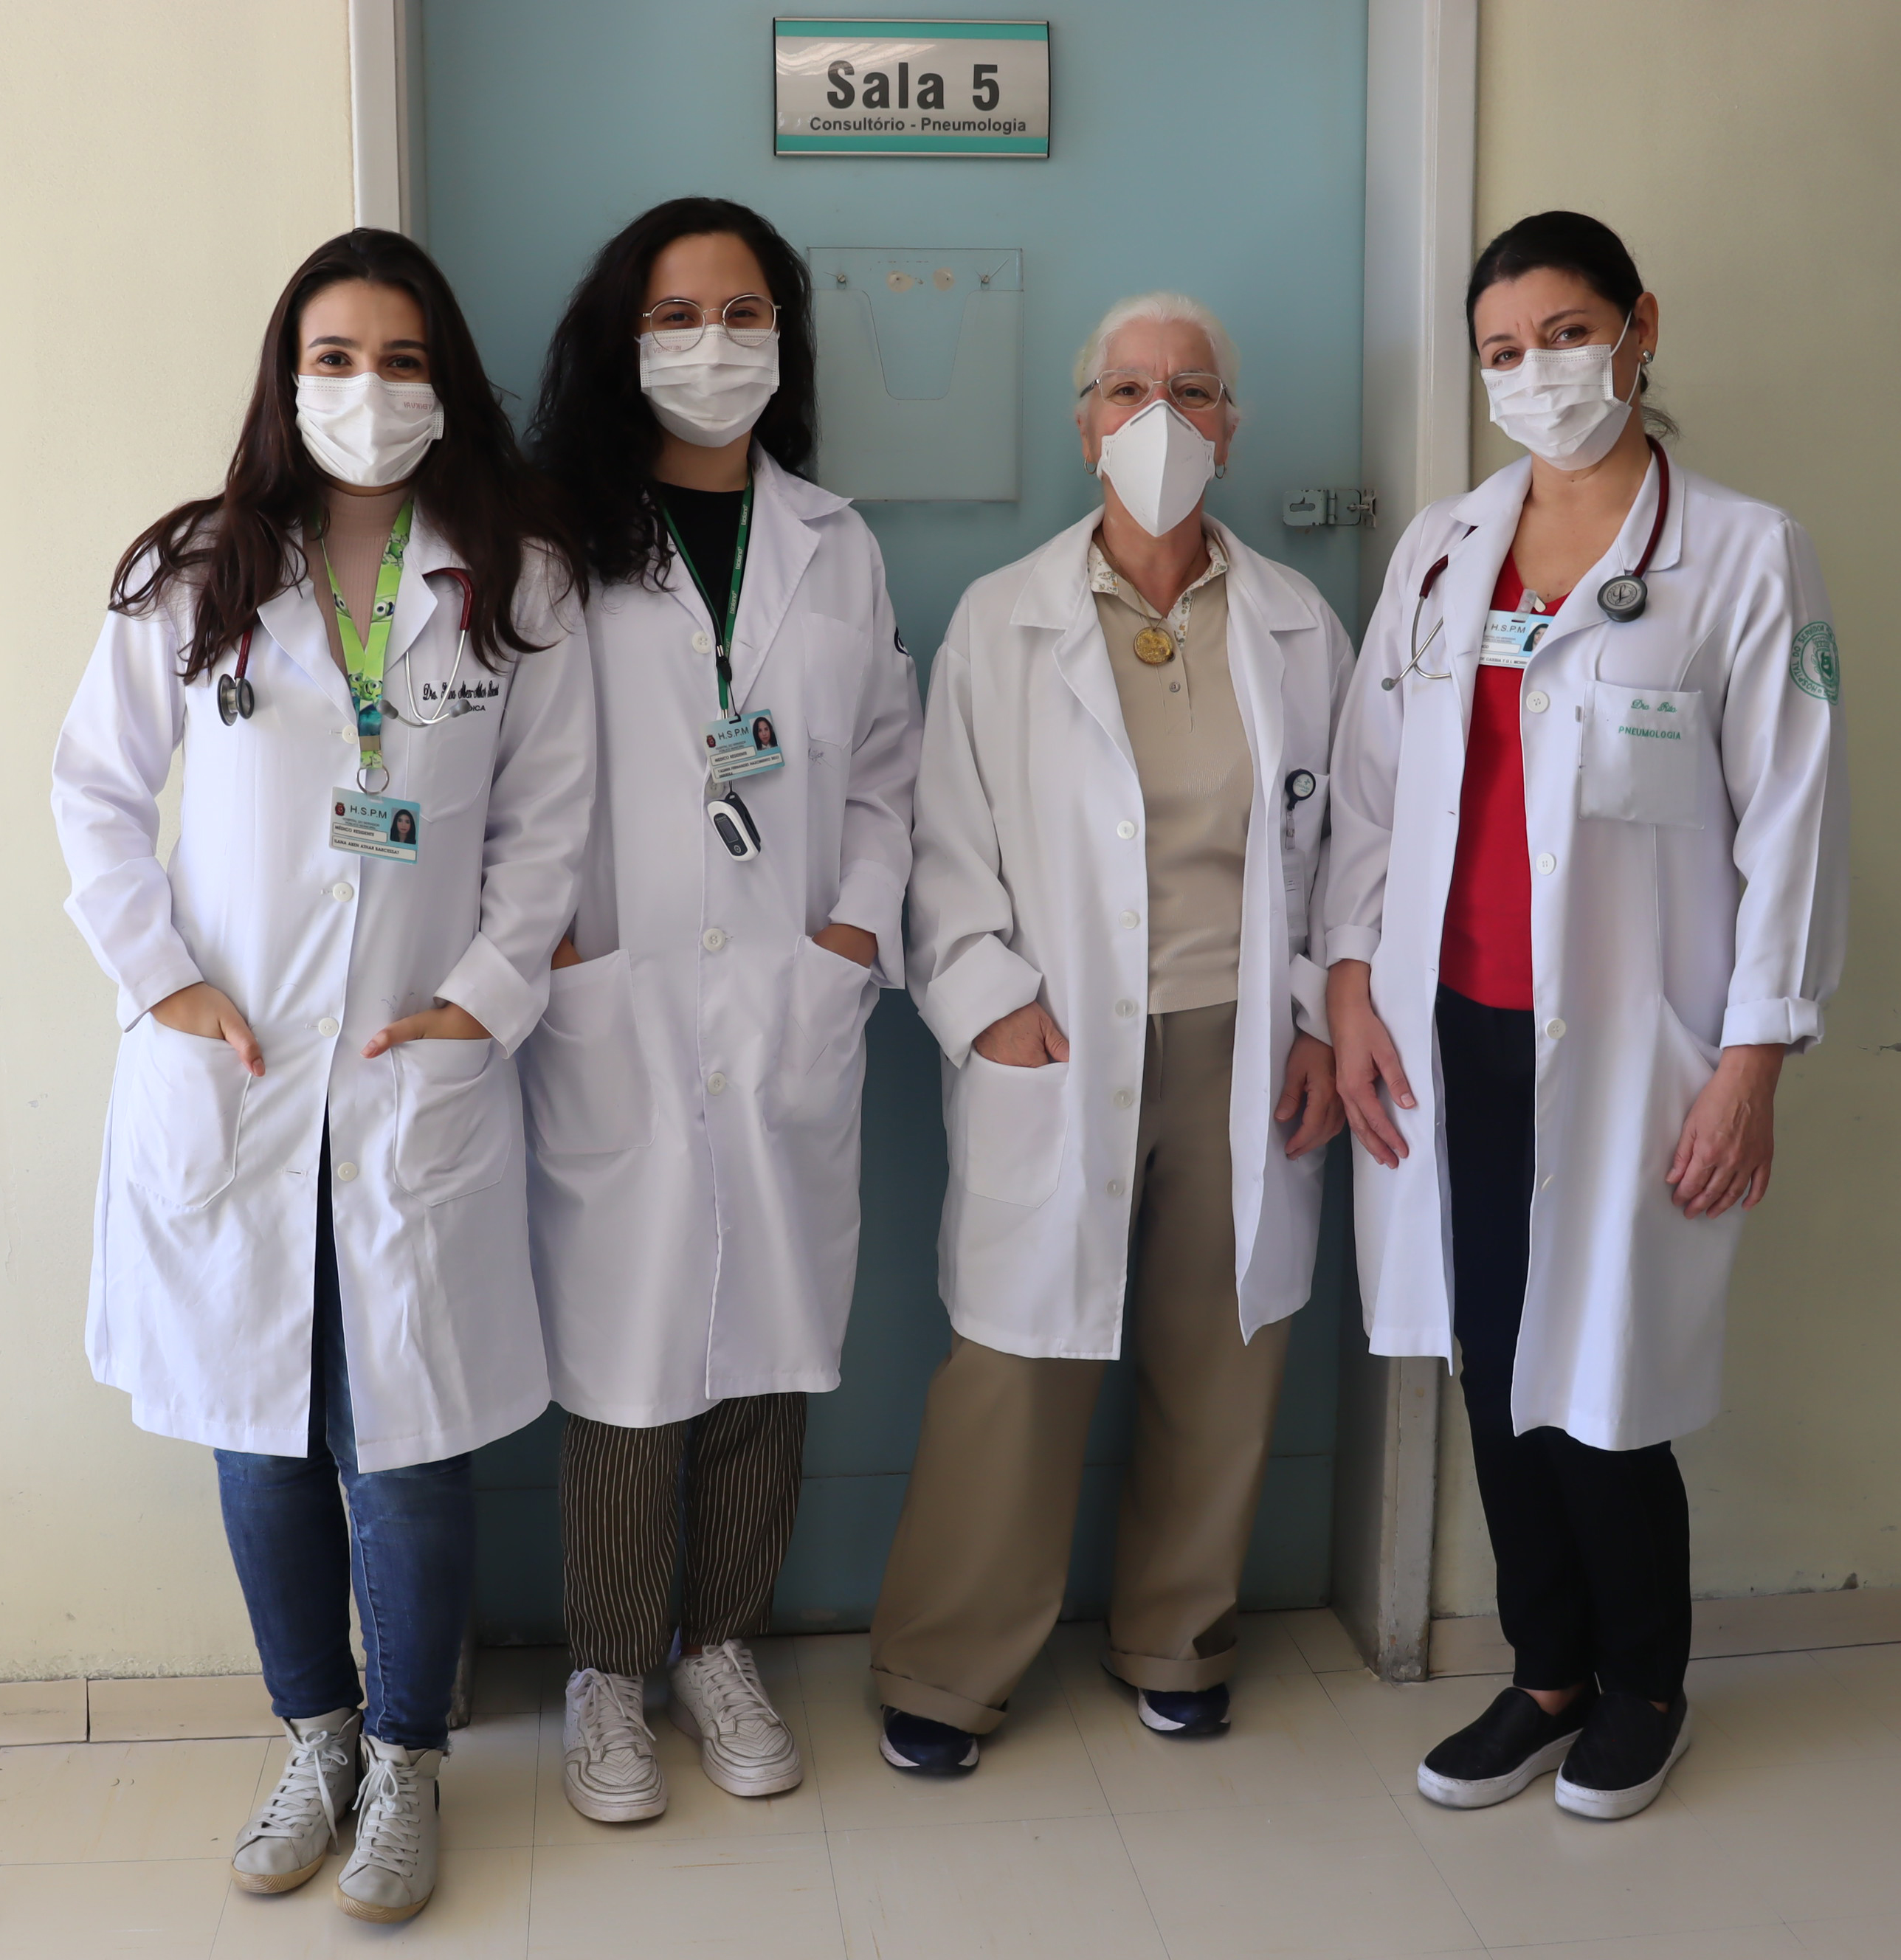 Foto com parte da equipe de pneumologista, quatro mulheres, em frente a uma porta azul onde está escrito sala cinco consultório pneumologia